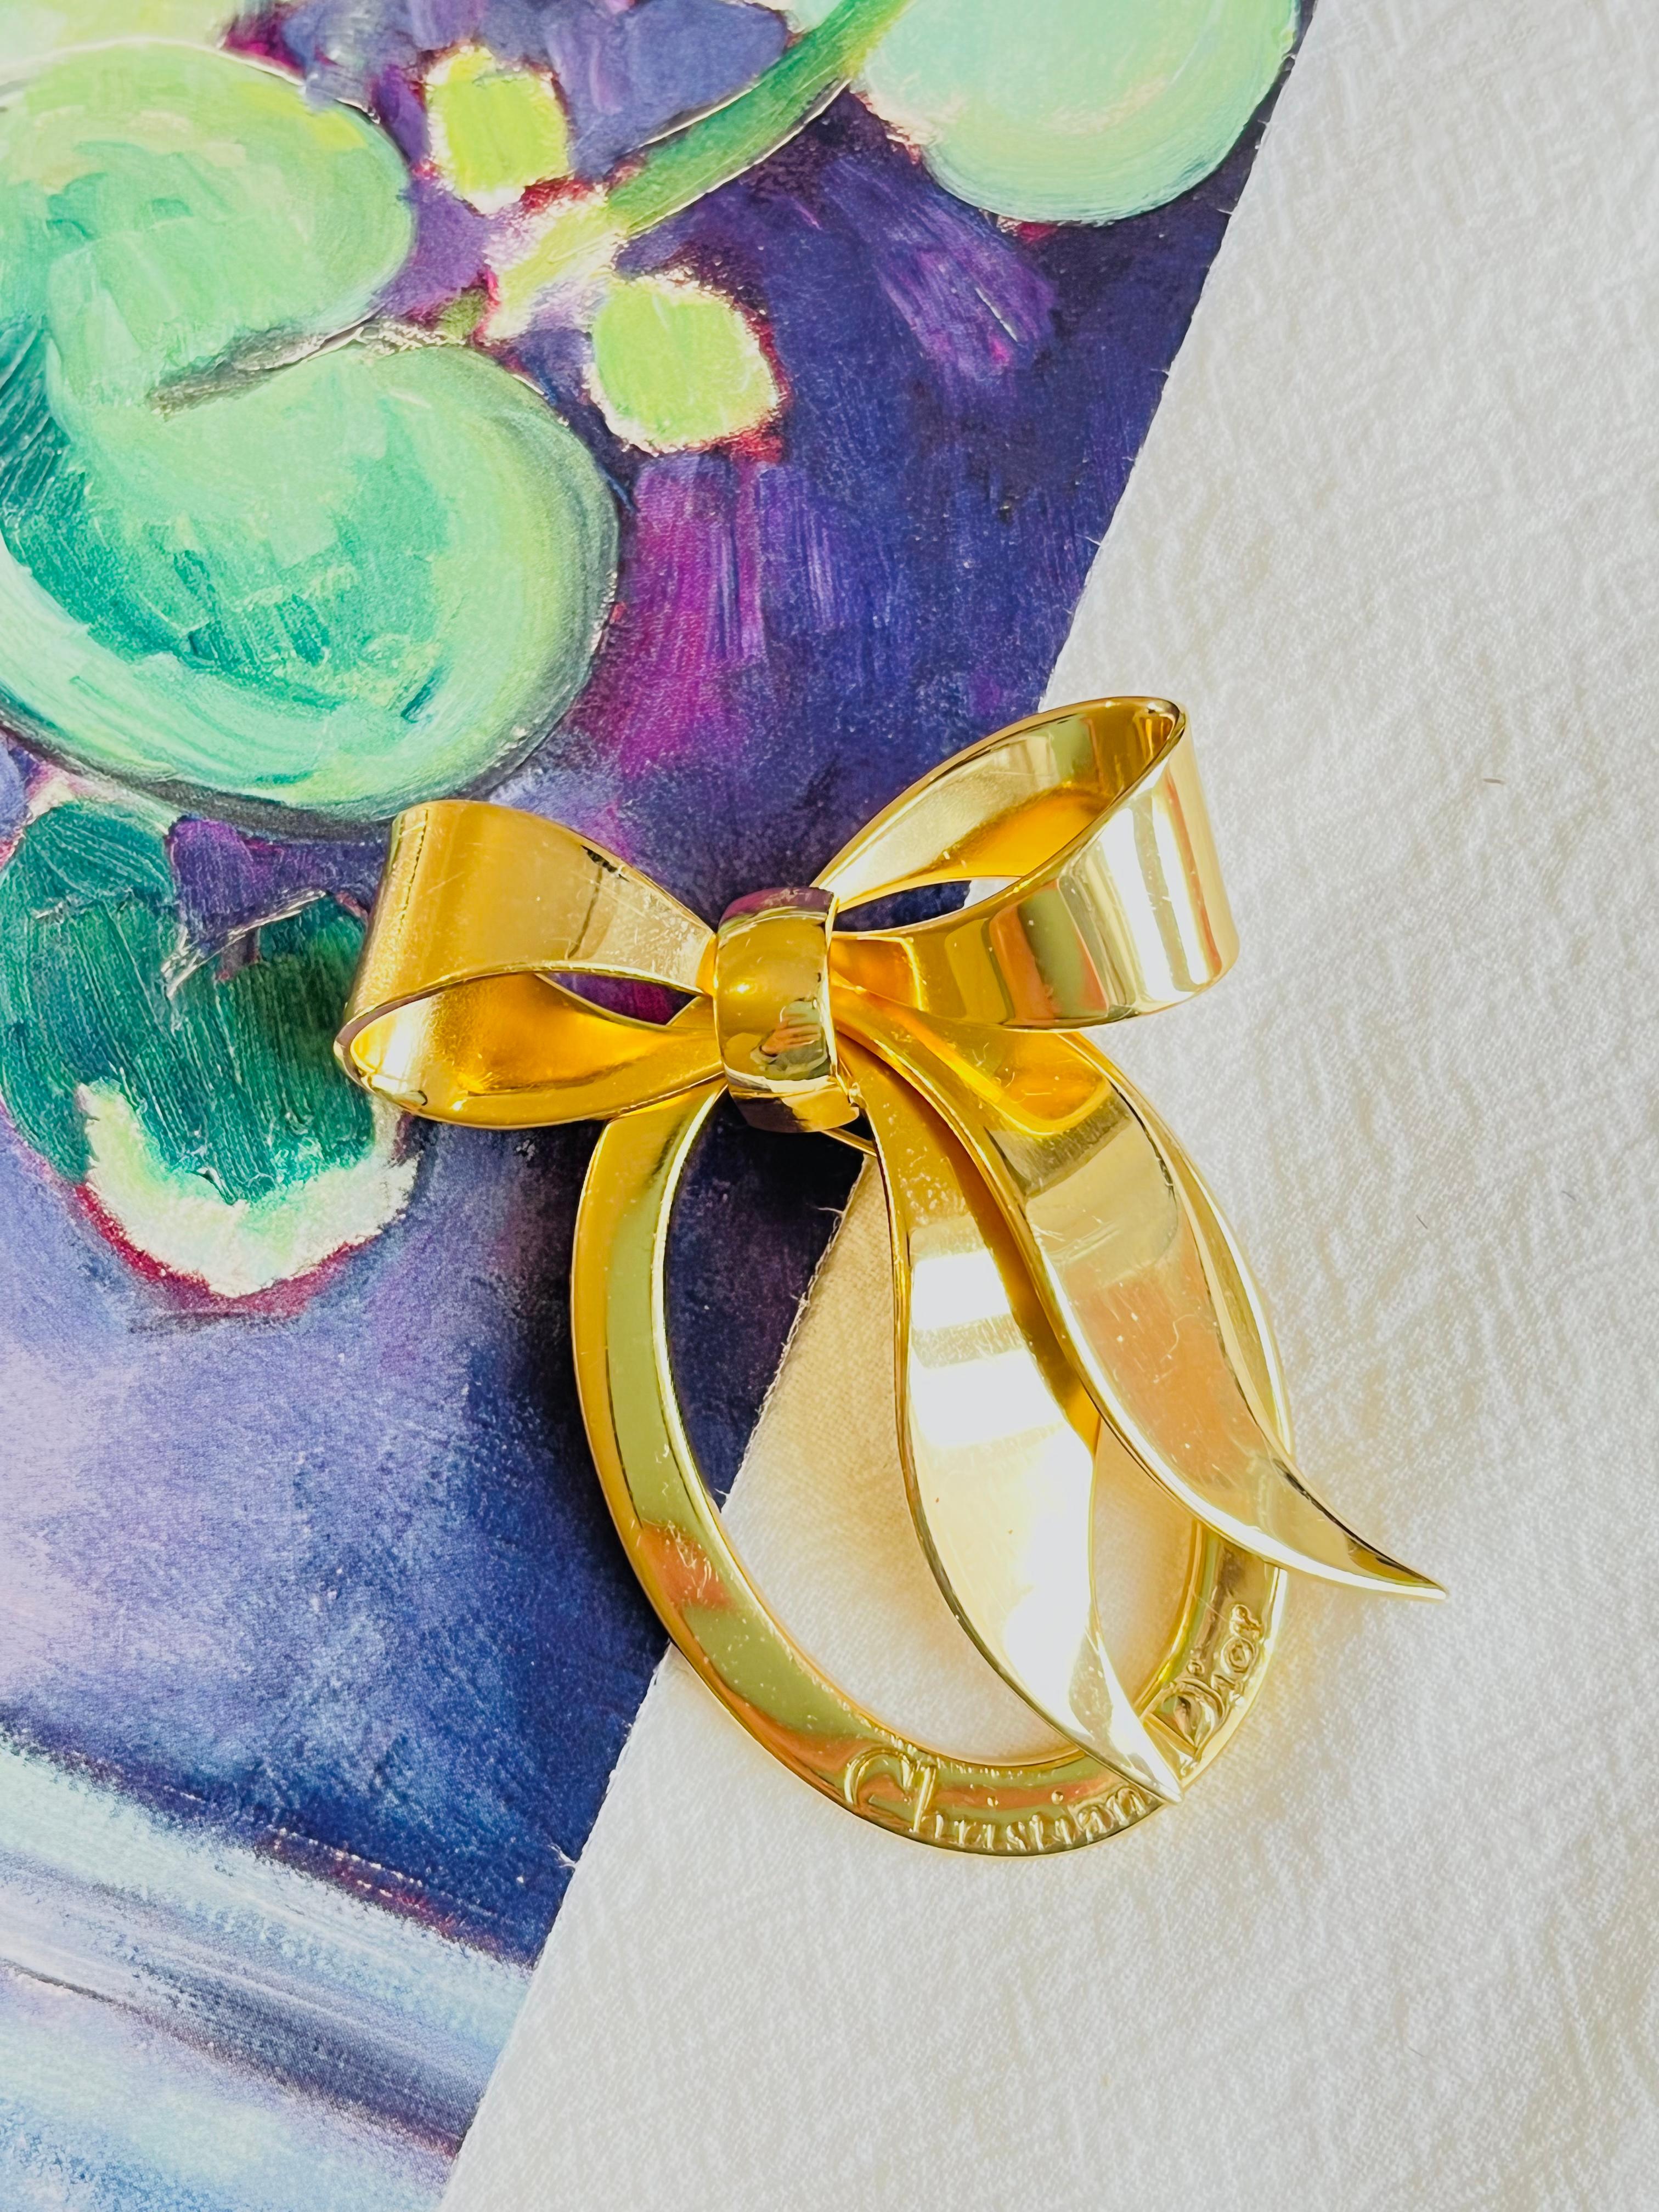 Christian Dior Vintage 1980er Jahre große ovale Glow Logo Monogram Bow Ribbon Chunky Brosche, Gold Tone

Sehr guter Zustand. Leichte Kratzer oder Farbverluste, kaum wahrnehmbar. 100% echt.

Ein Unikat. Diese stilisierte Brosche ist